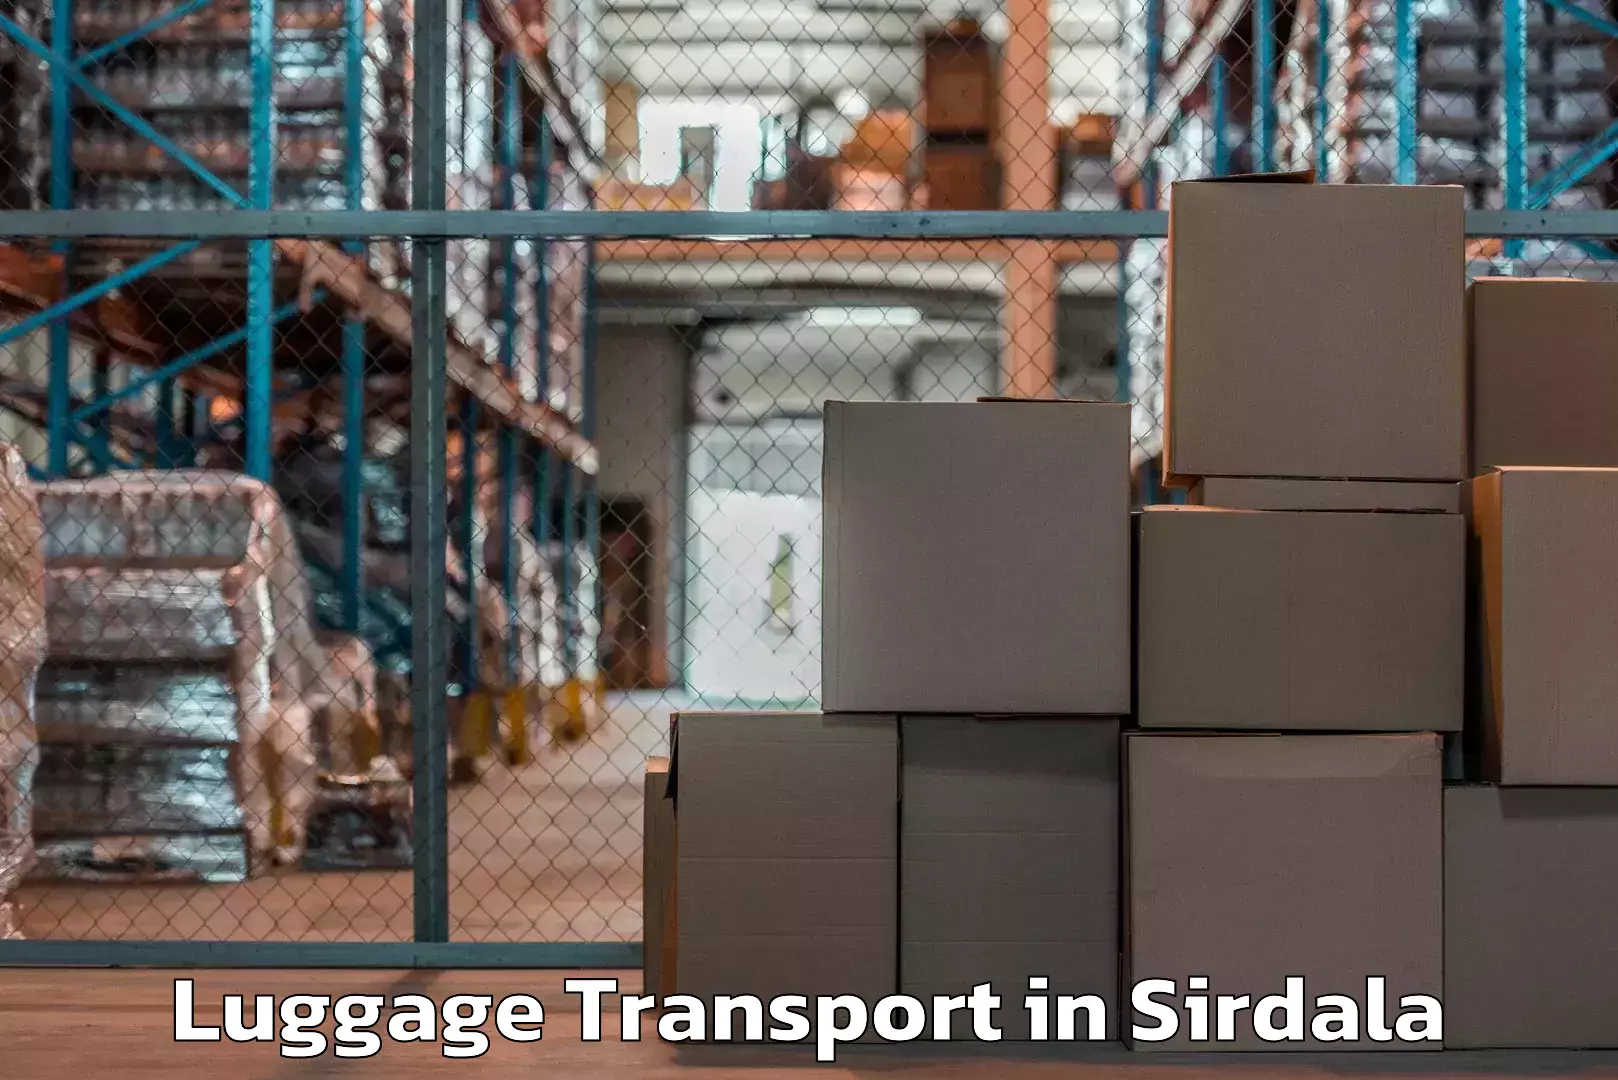 Urban luggage shipping in Sirdala